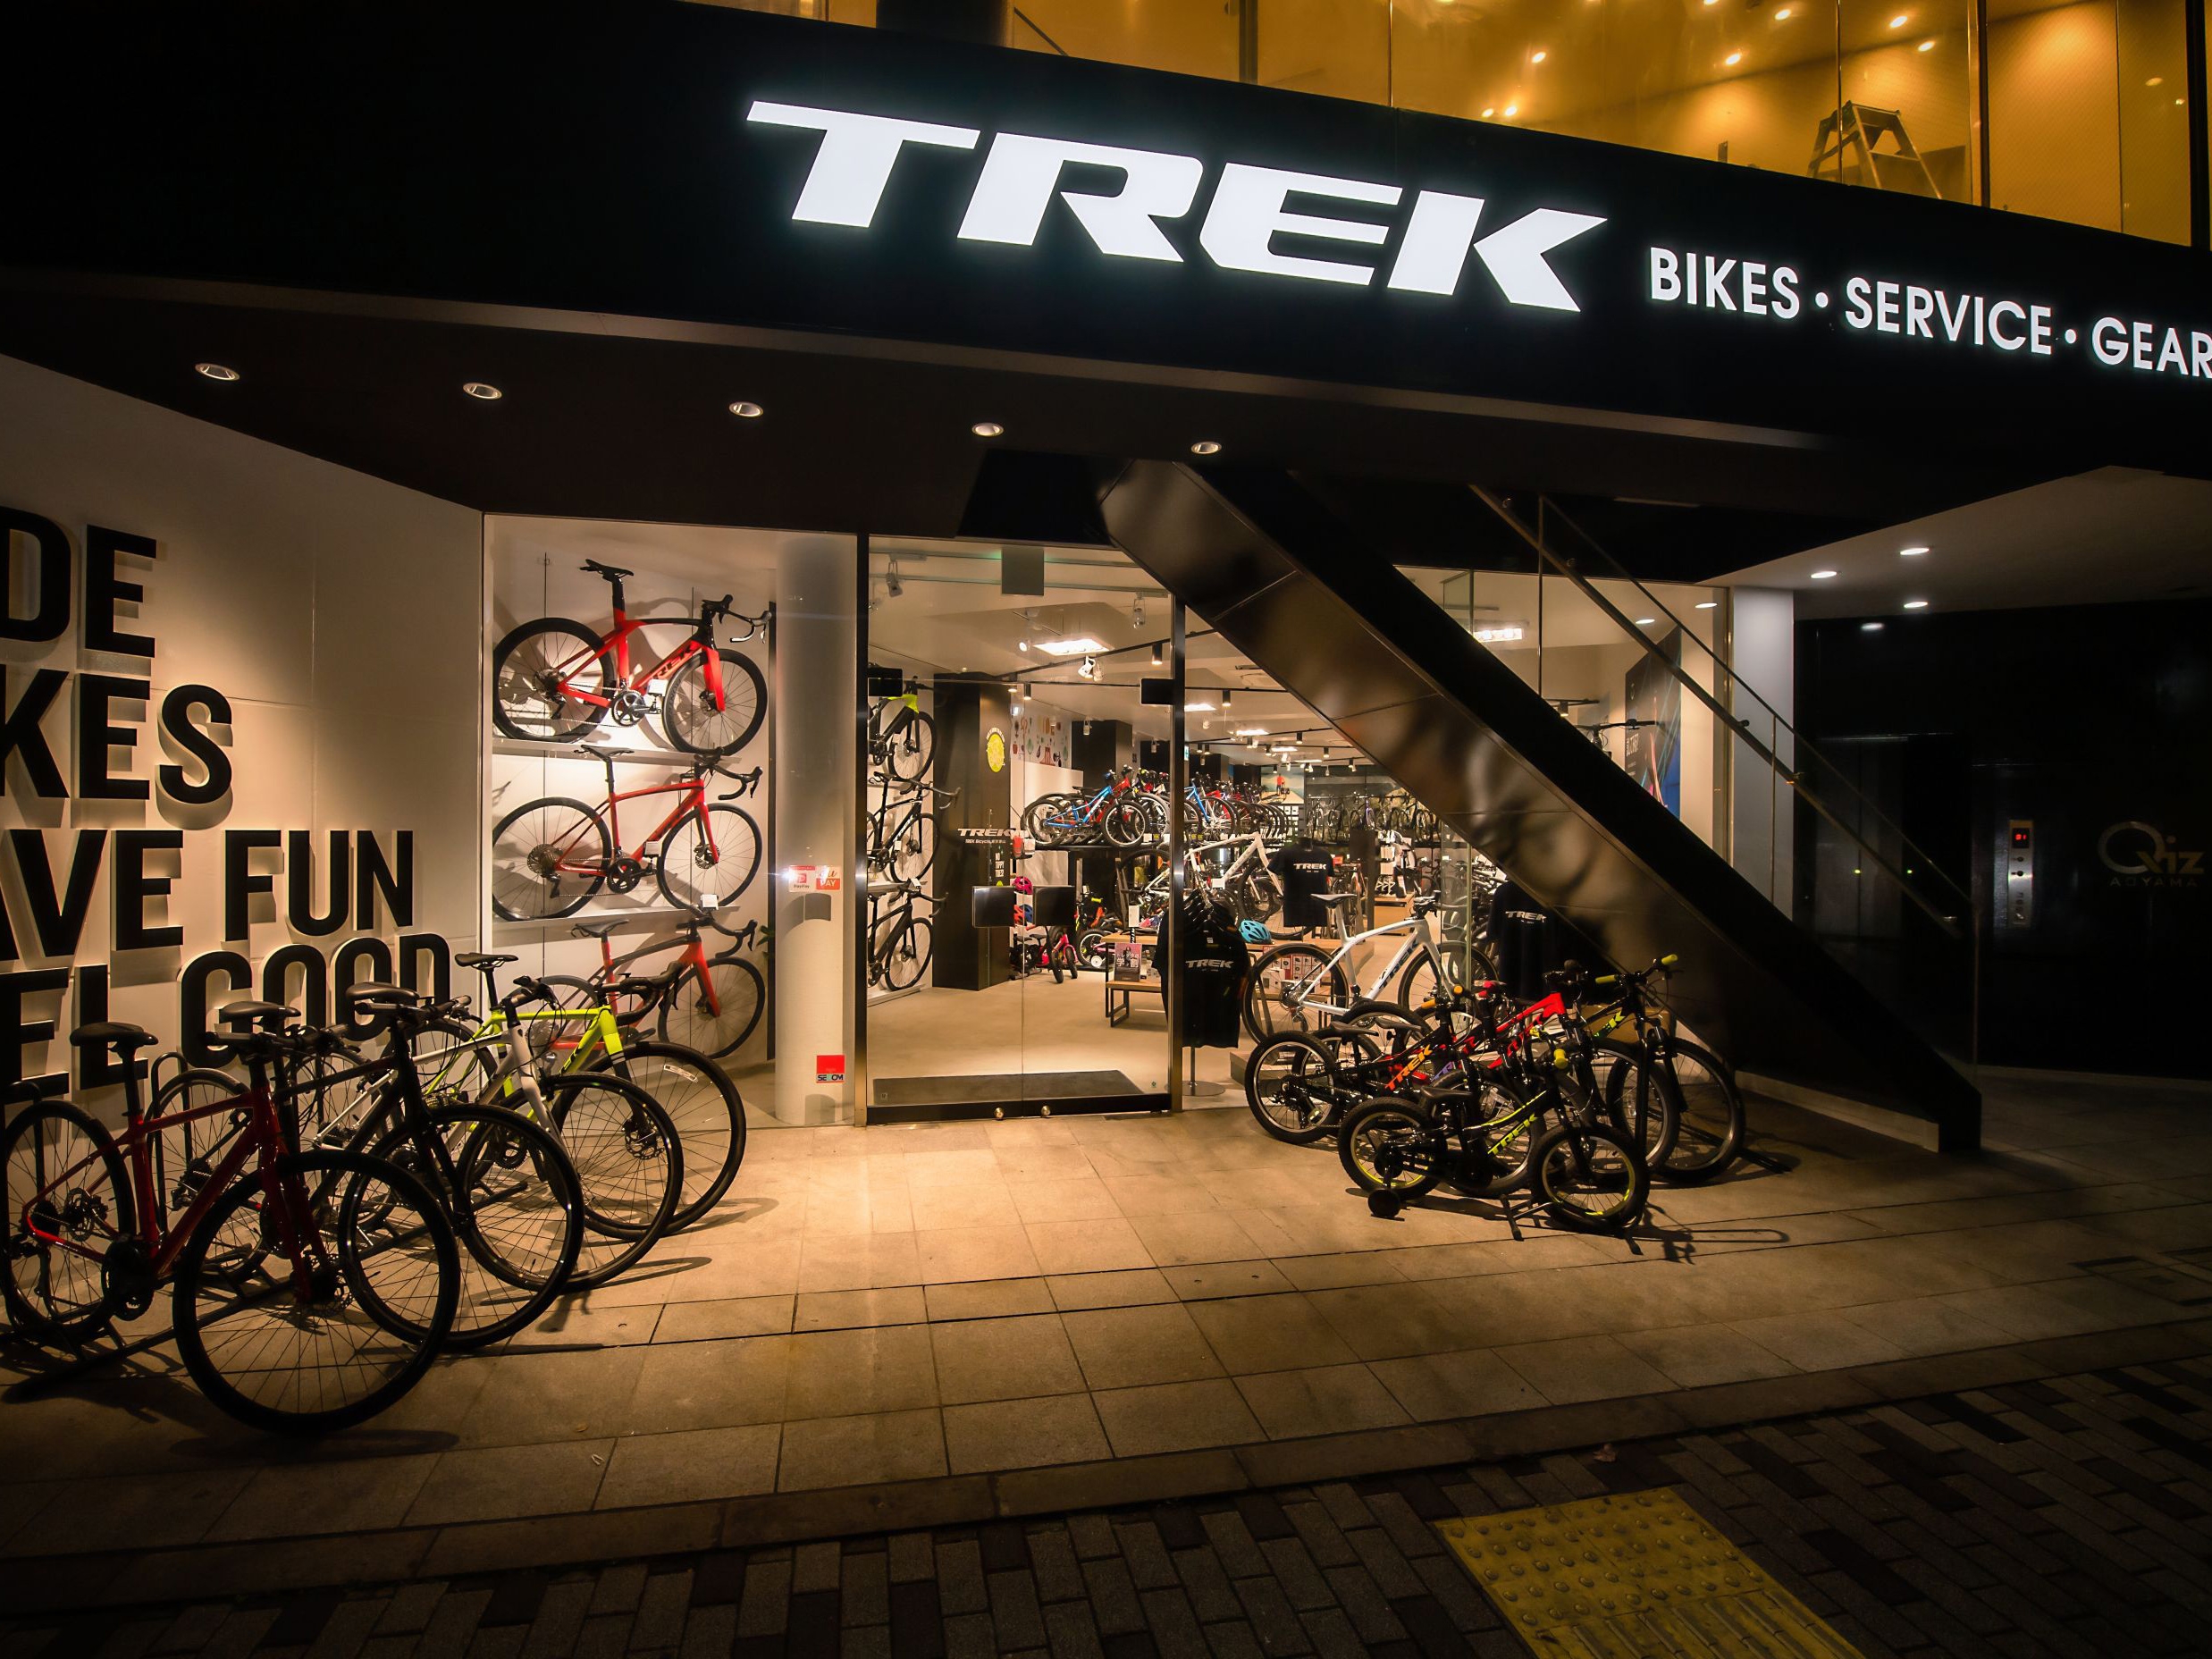 trek bicycle online store